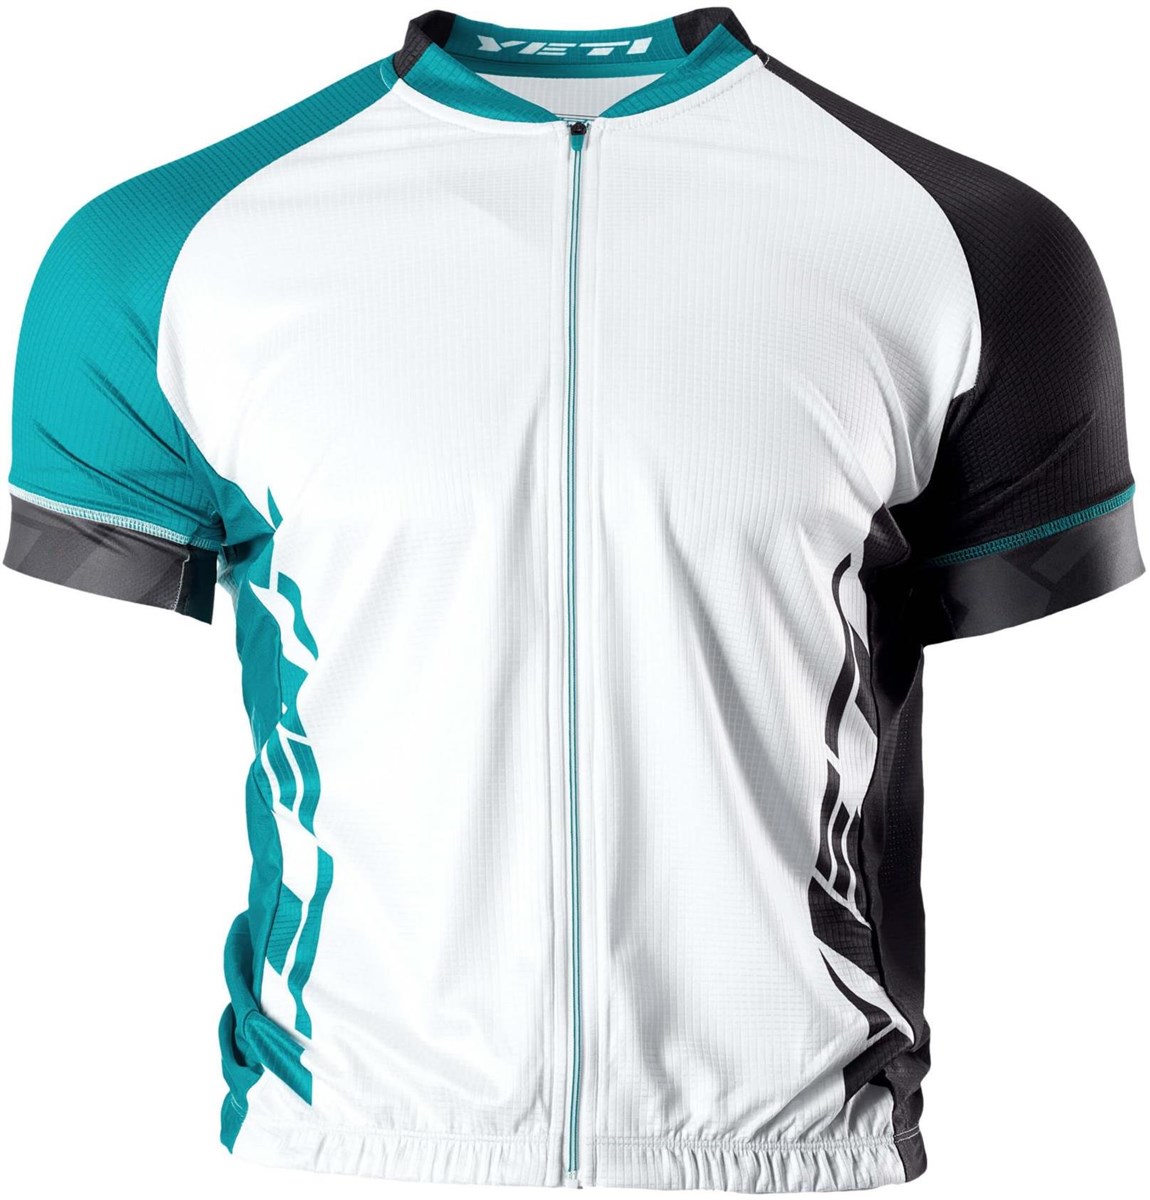 Yeti Ironton XC Short Sleeve Jersey 2017 product image